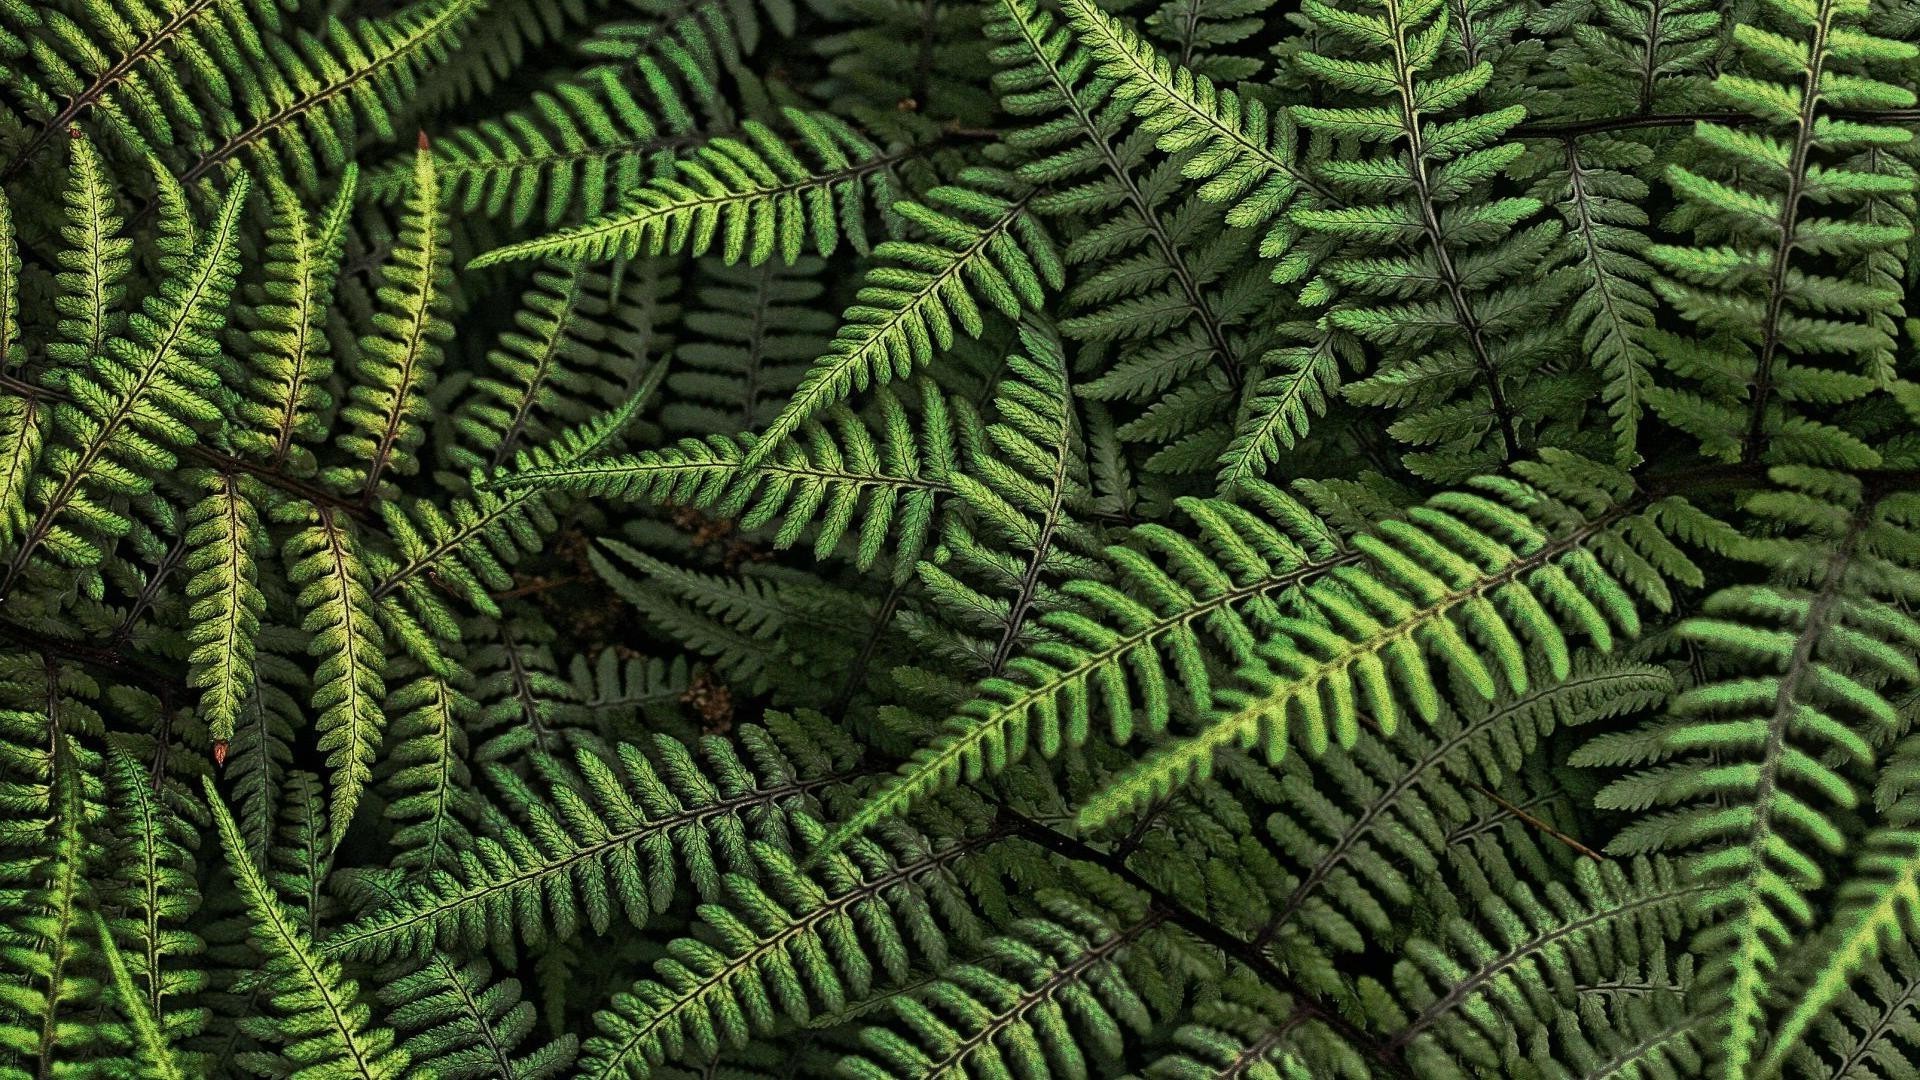 texture fern leaf wood flora nature outdoors frond desktop growth pattern lush bracken garden abstract